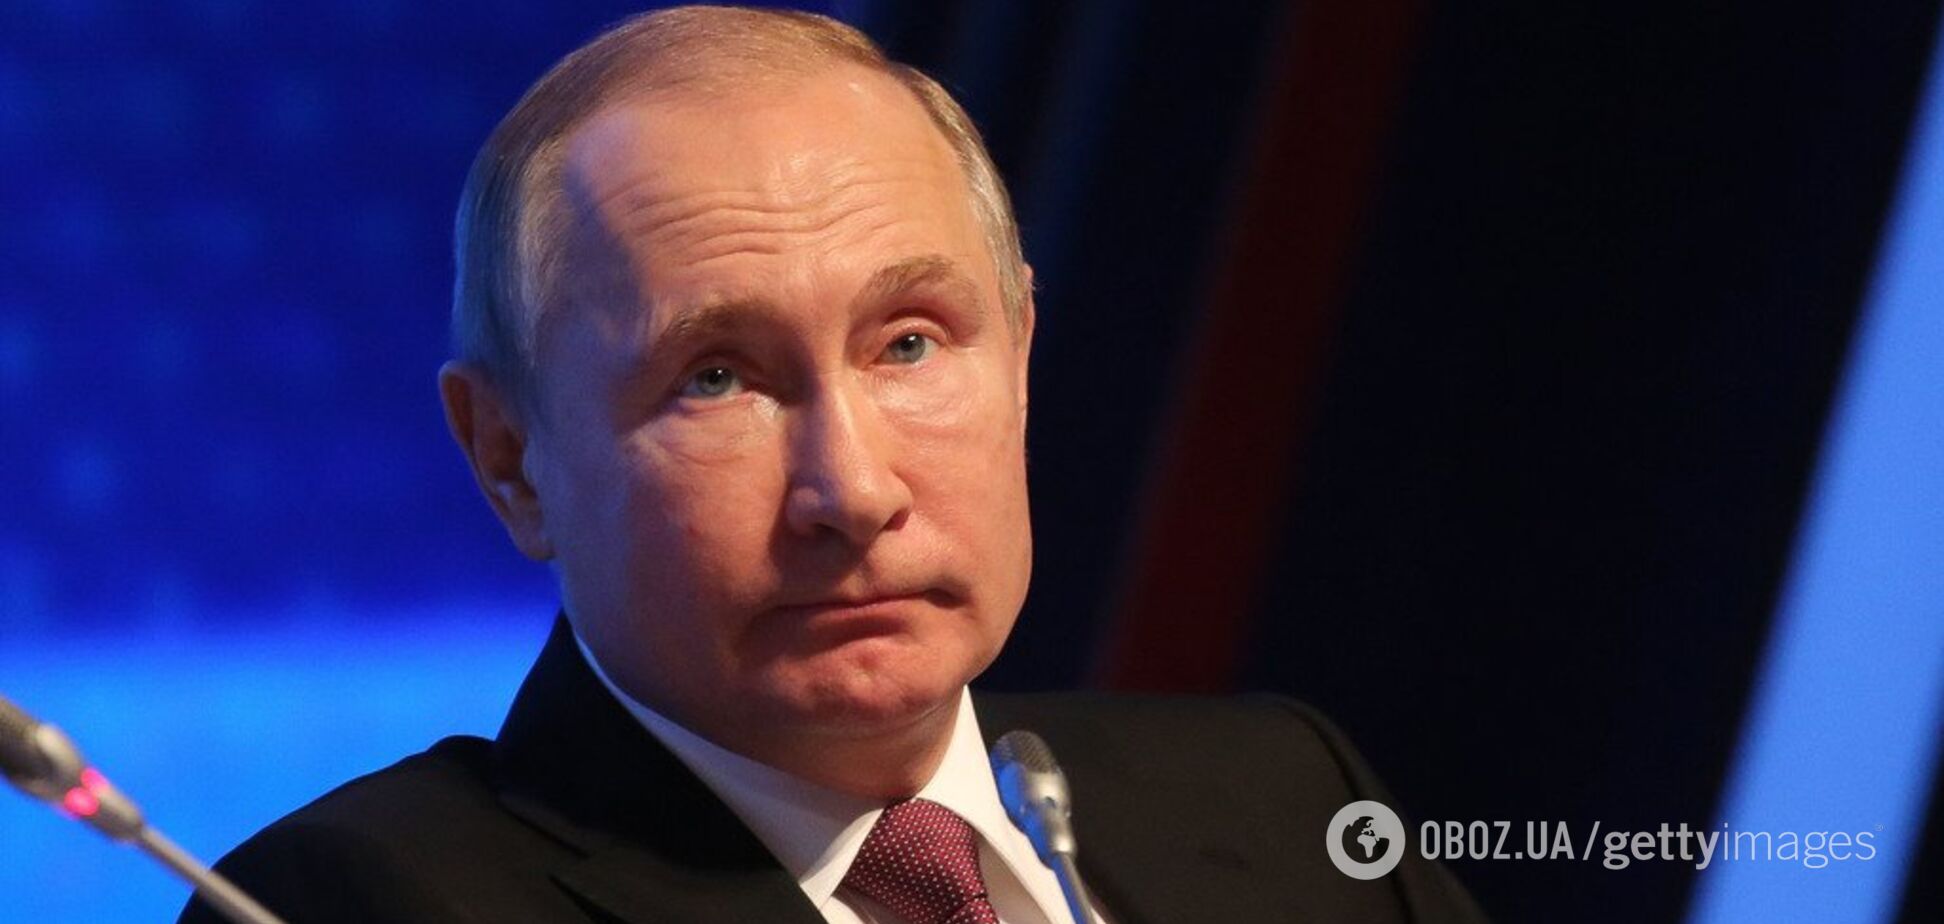 'Ватажок бандитів на тумбочці в лабутенах': у мережі висміяли послання Путіна